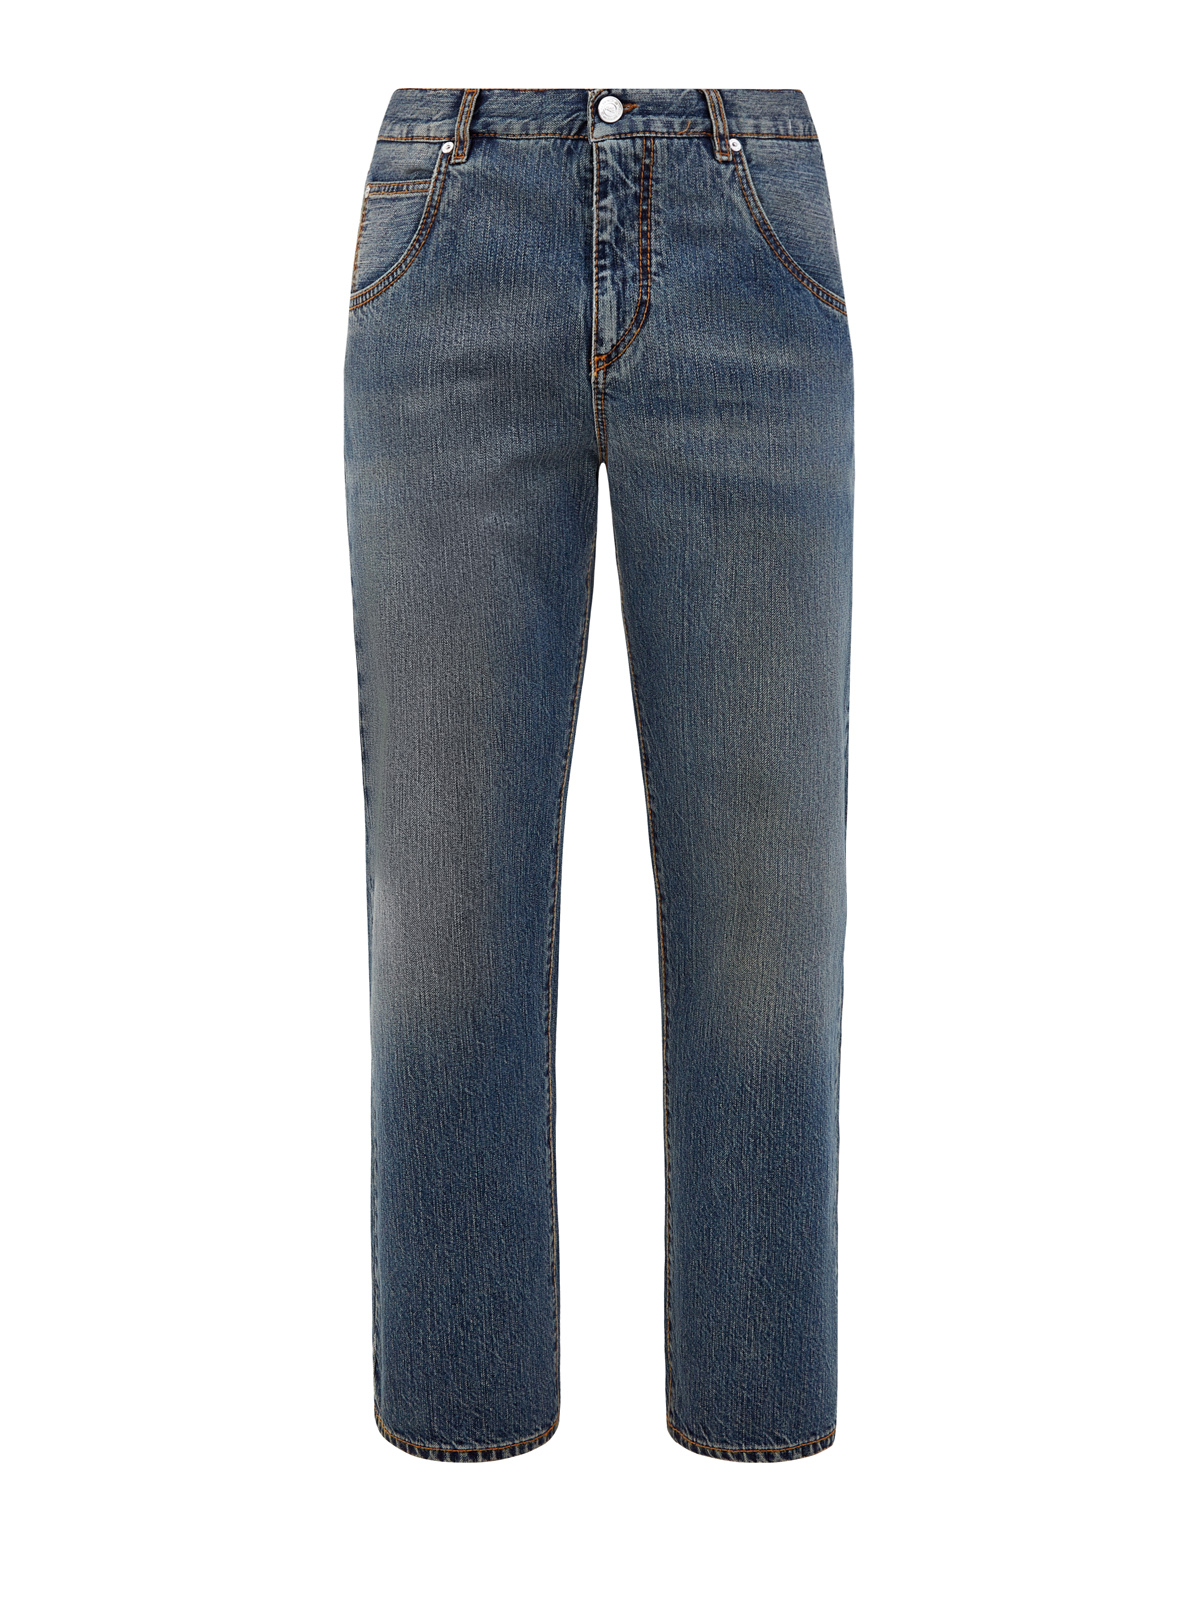 Свободные джинсы с контрастной прострочкой и вышитым логотипом ETRO синего цвета